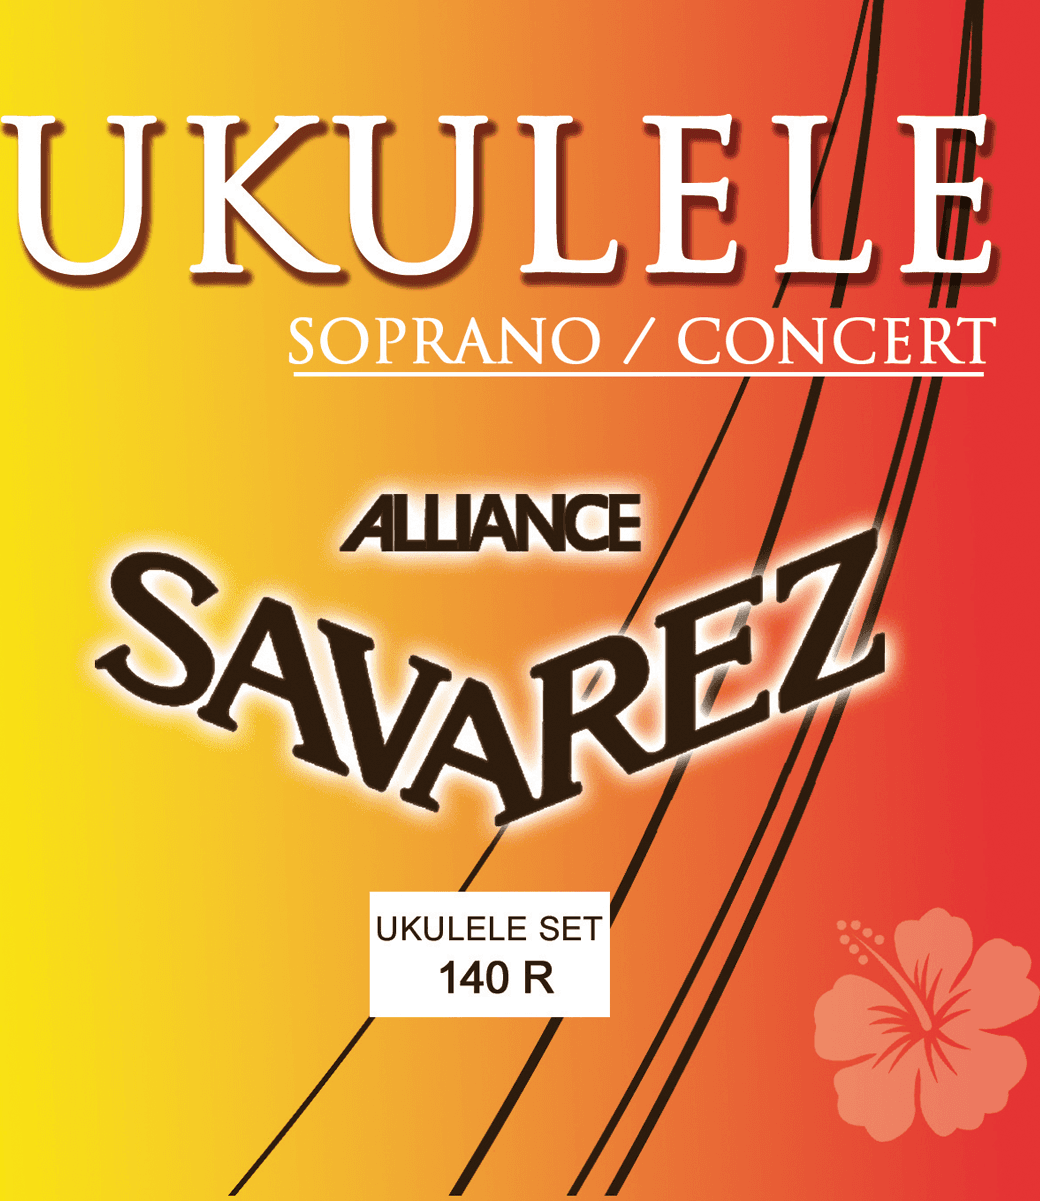 Savarez Ukulele Soprano Concert Alliance 140r - Ukulelesnaren - Main picture